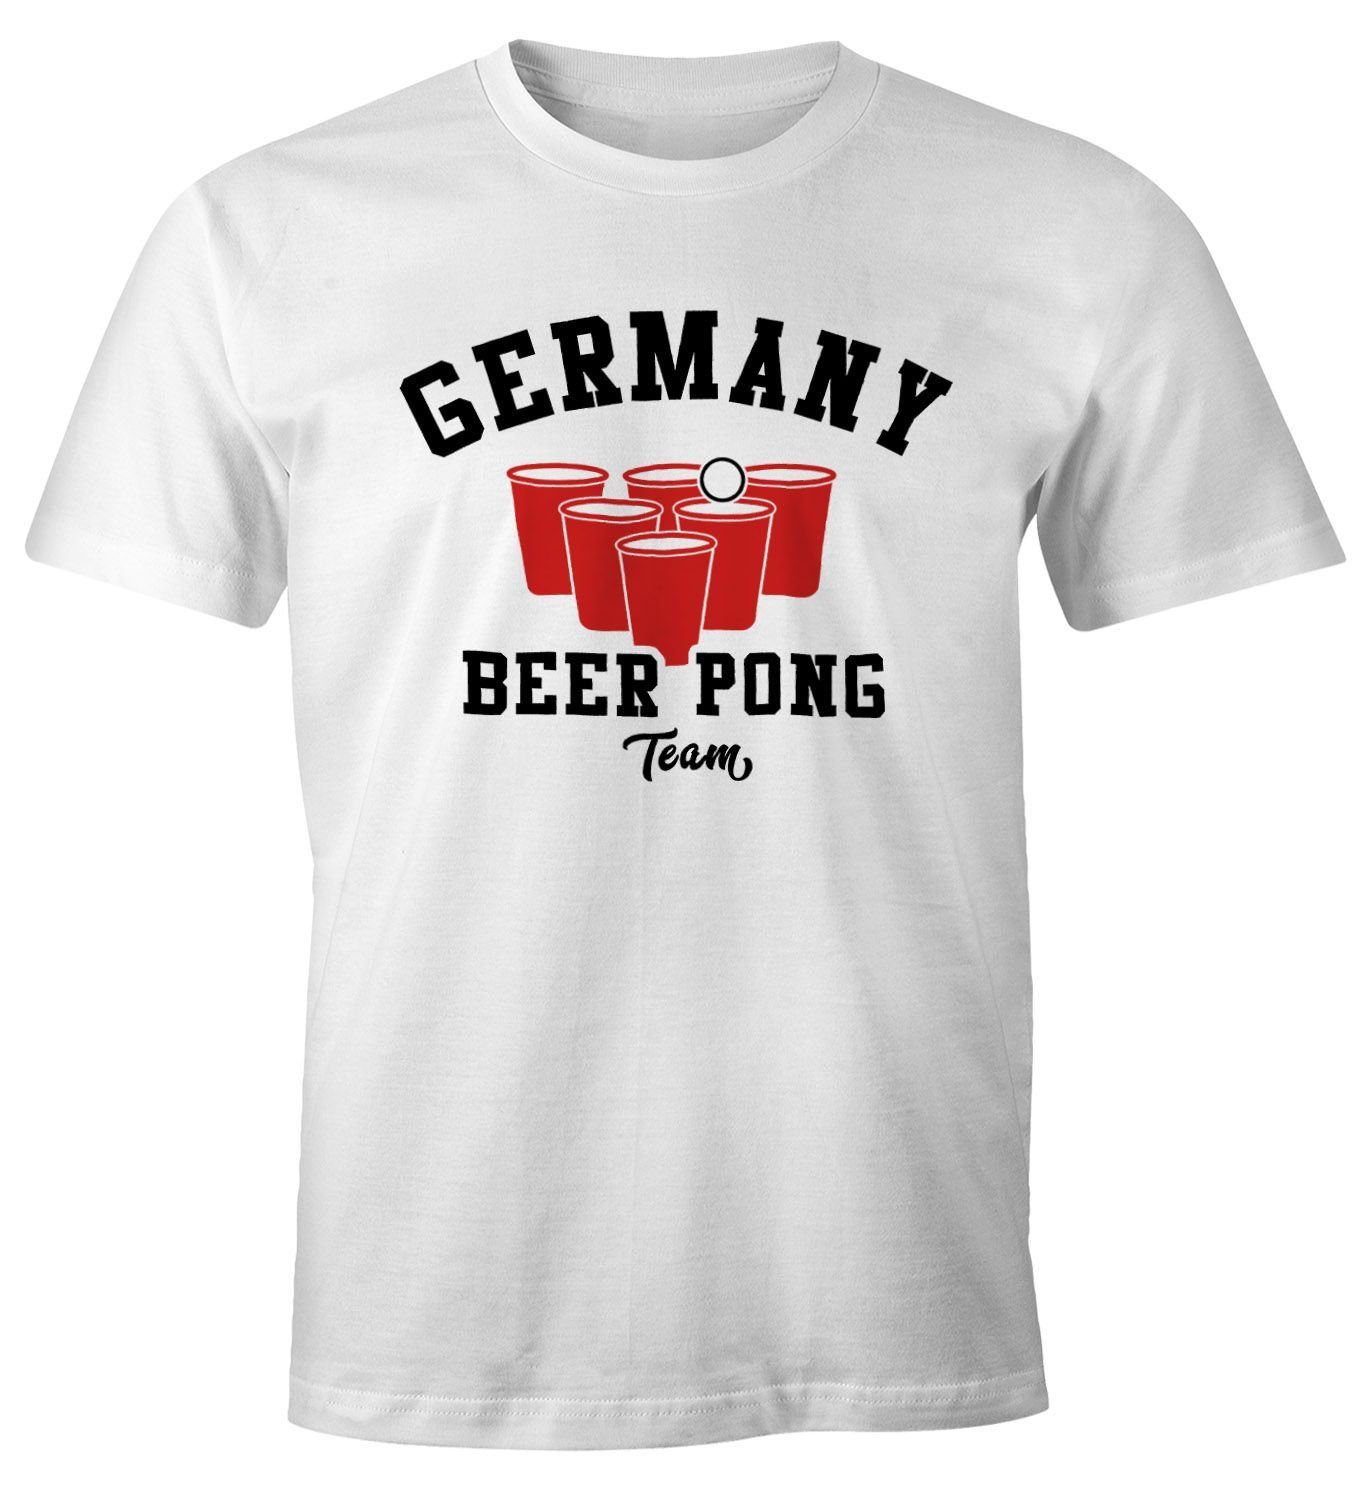 T-Shirt Print Moonworks® Herren mit Fun-Shirt MoonWorks Beer weiß Print-Shirt Pong Bier Team Germany